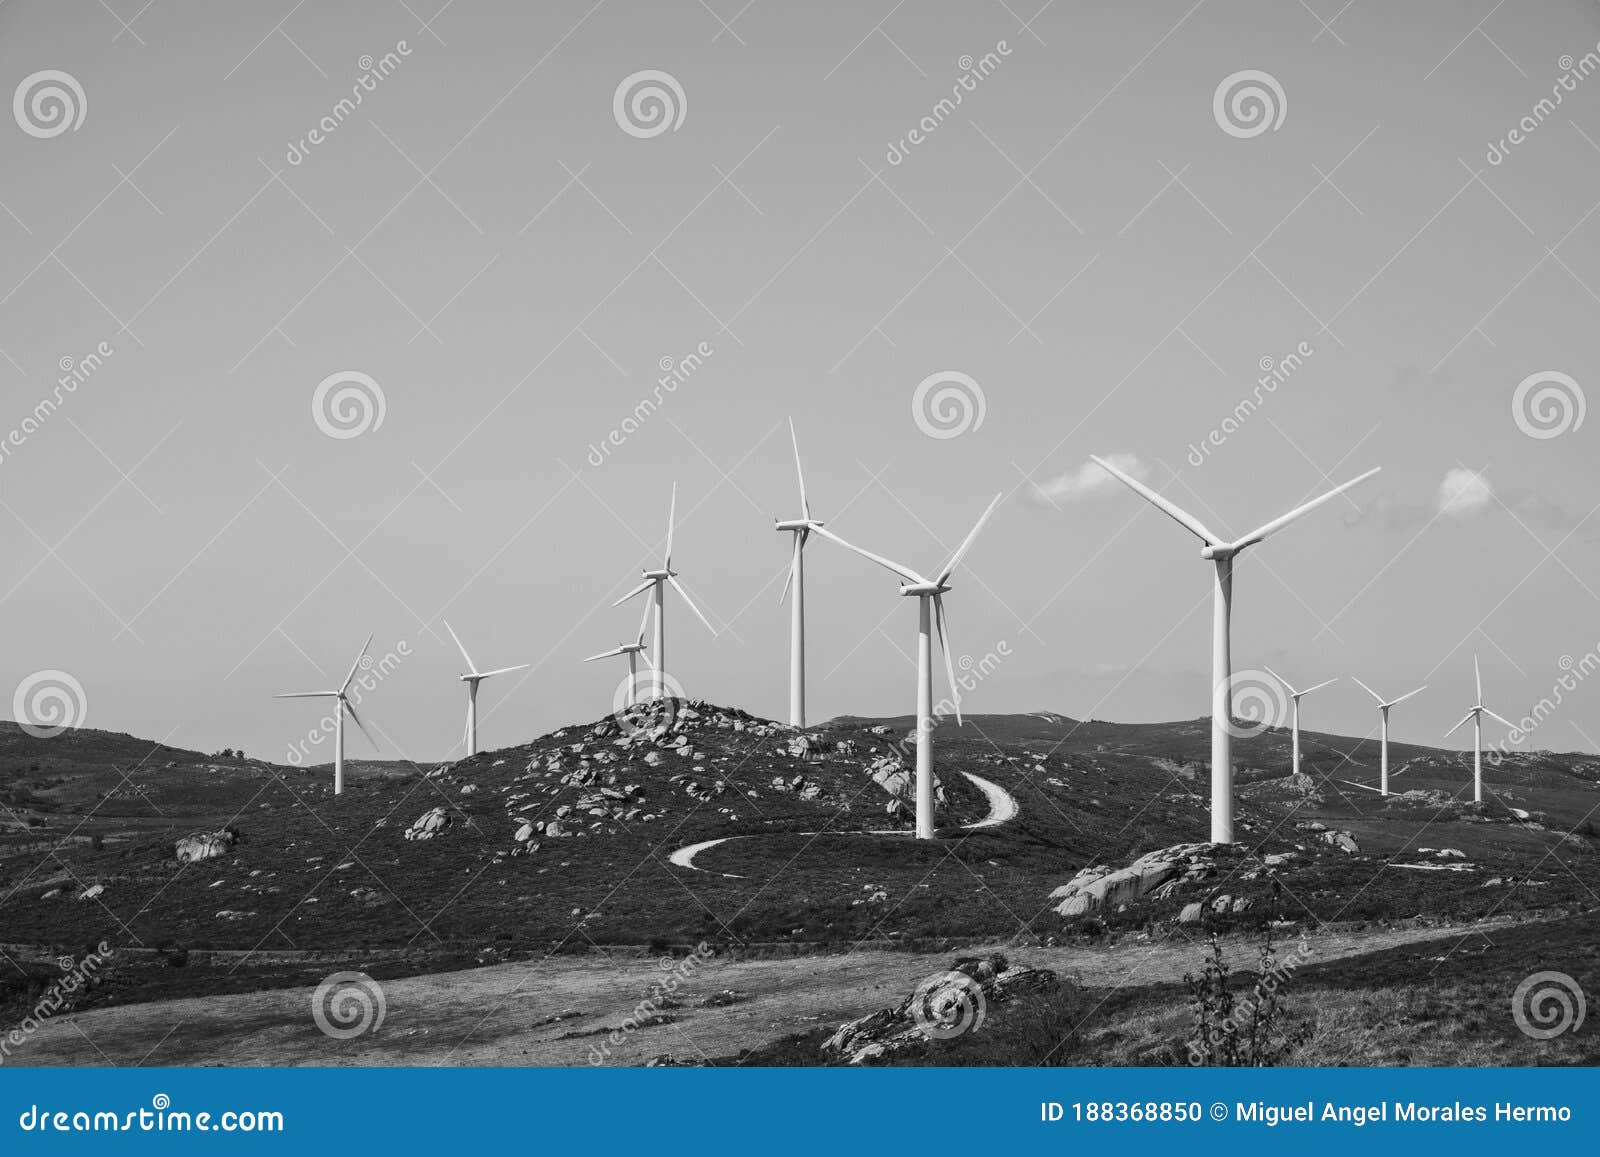 wind turbines in the sierra de suido in galicia spain